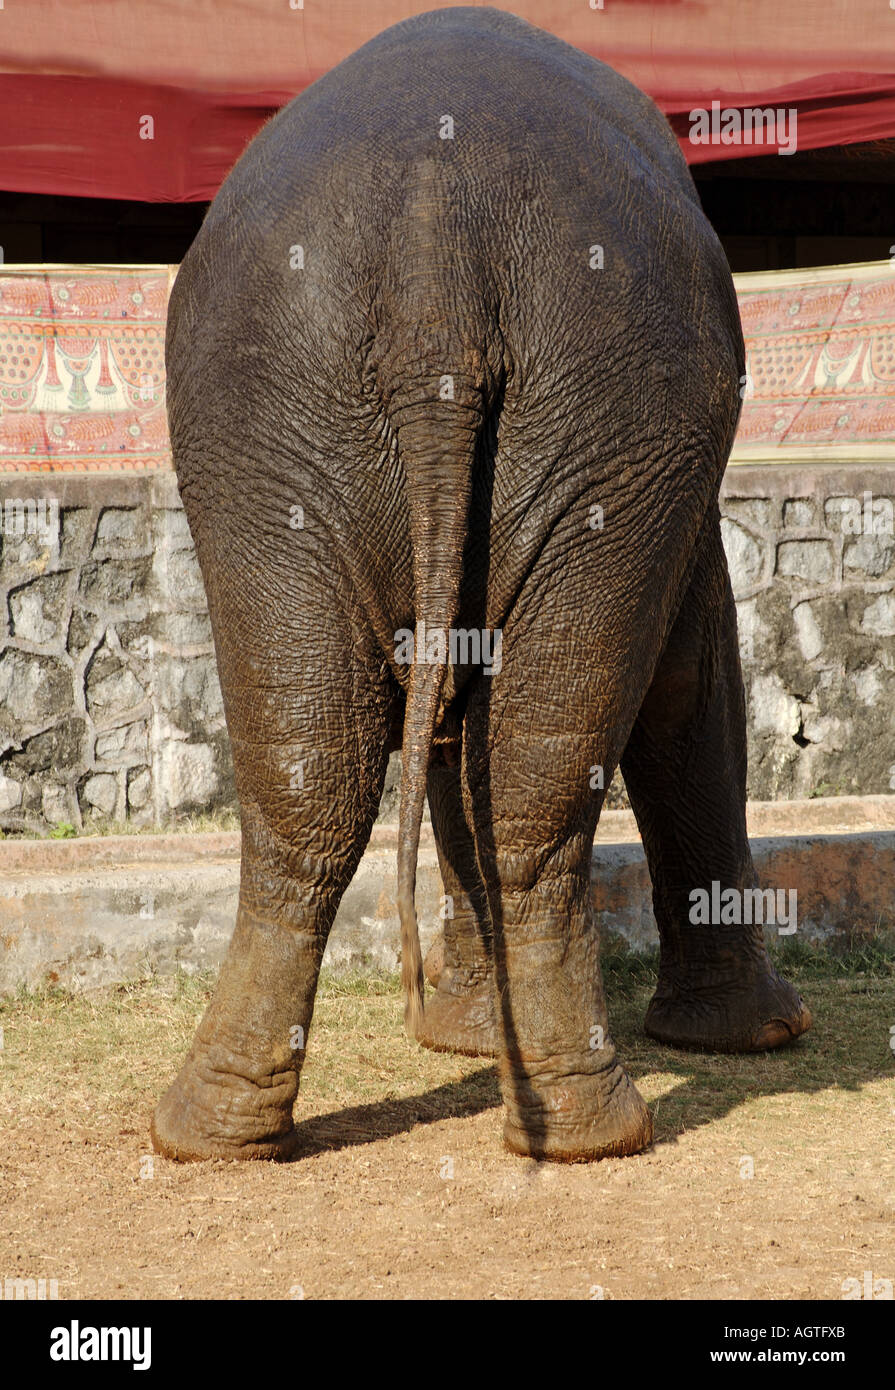 HMA79946 éléphant asiatique Elephas maximus de derrière sa queue et ses pattes arrière Banque D'Images